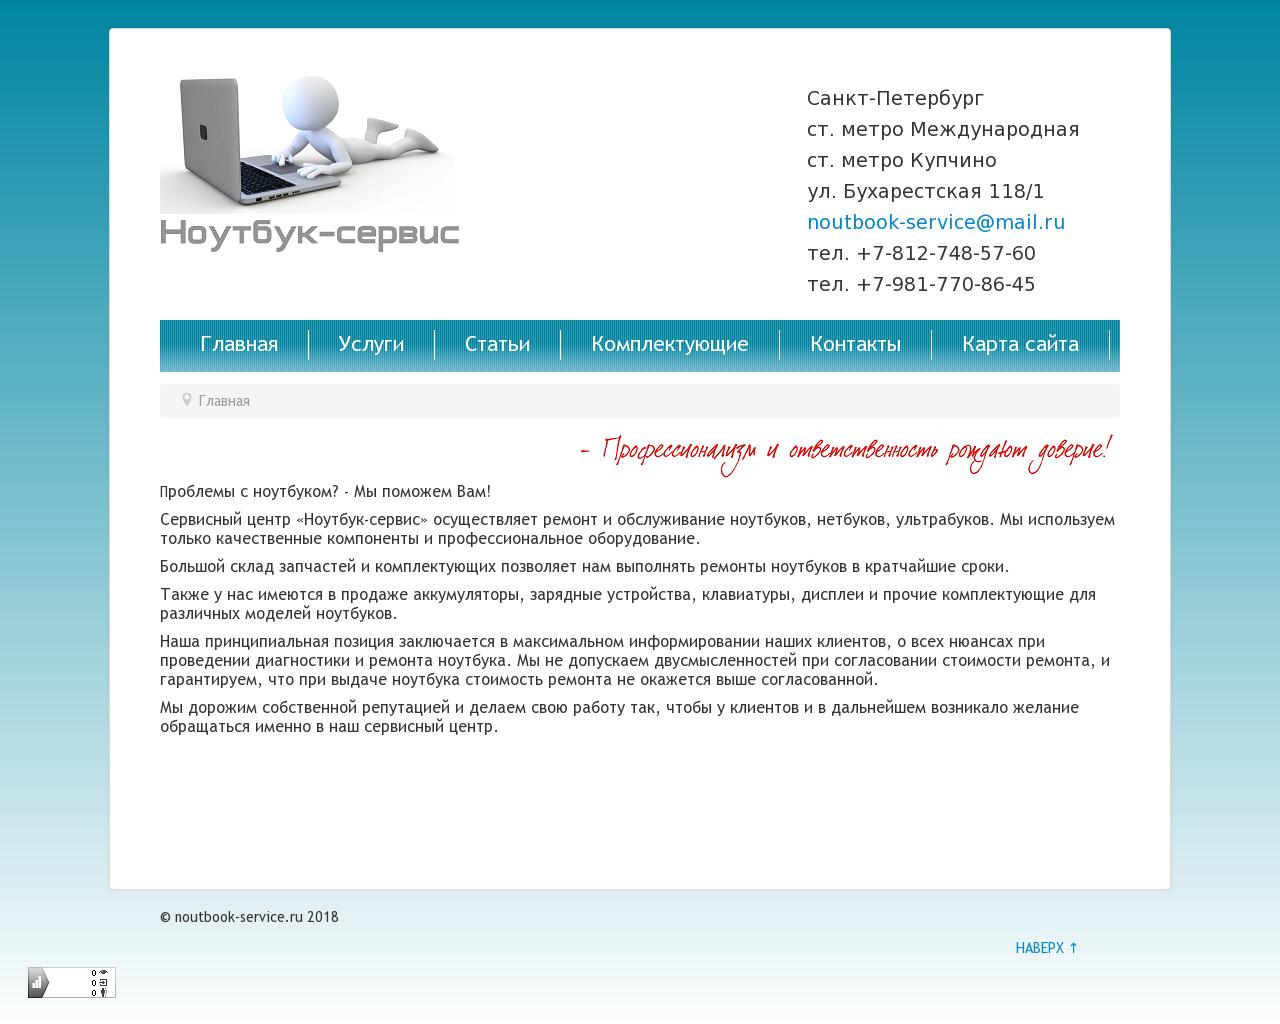 Изображение сайта noutbook-service.ru в разрешении 1280x1024